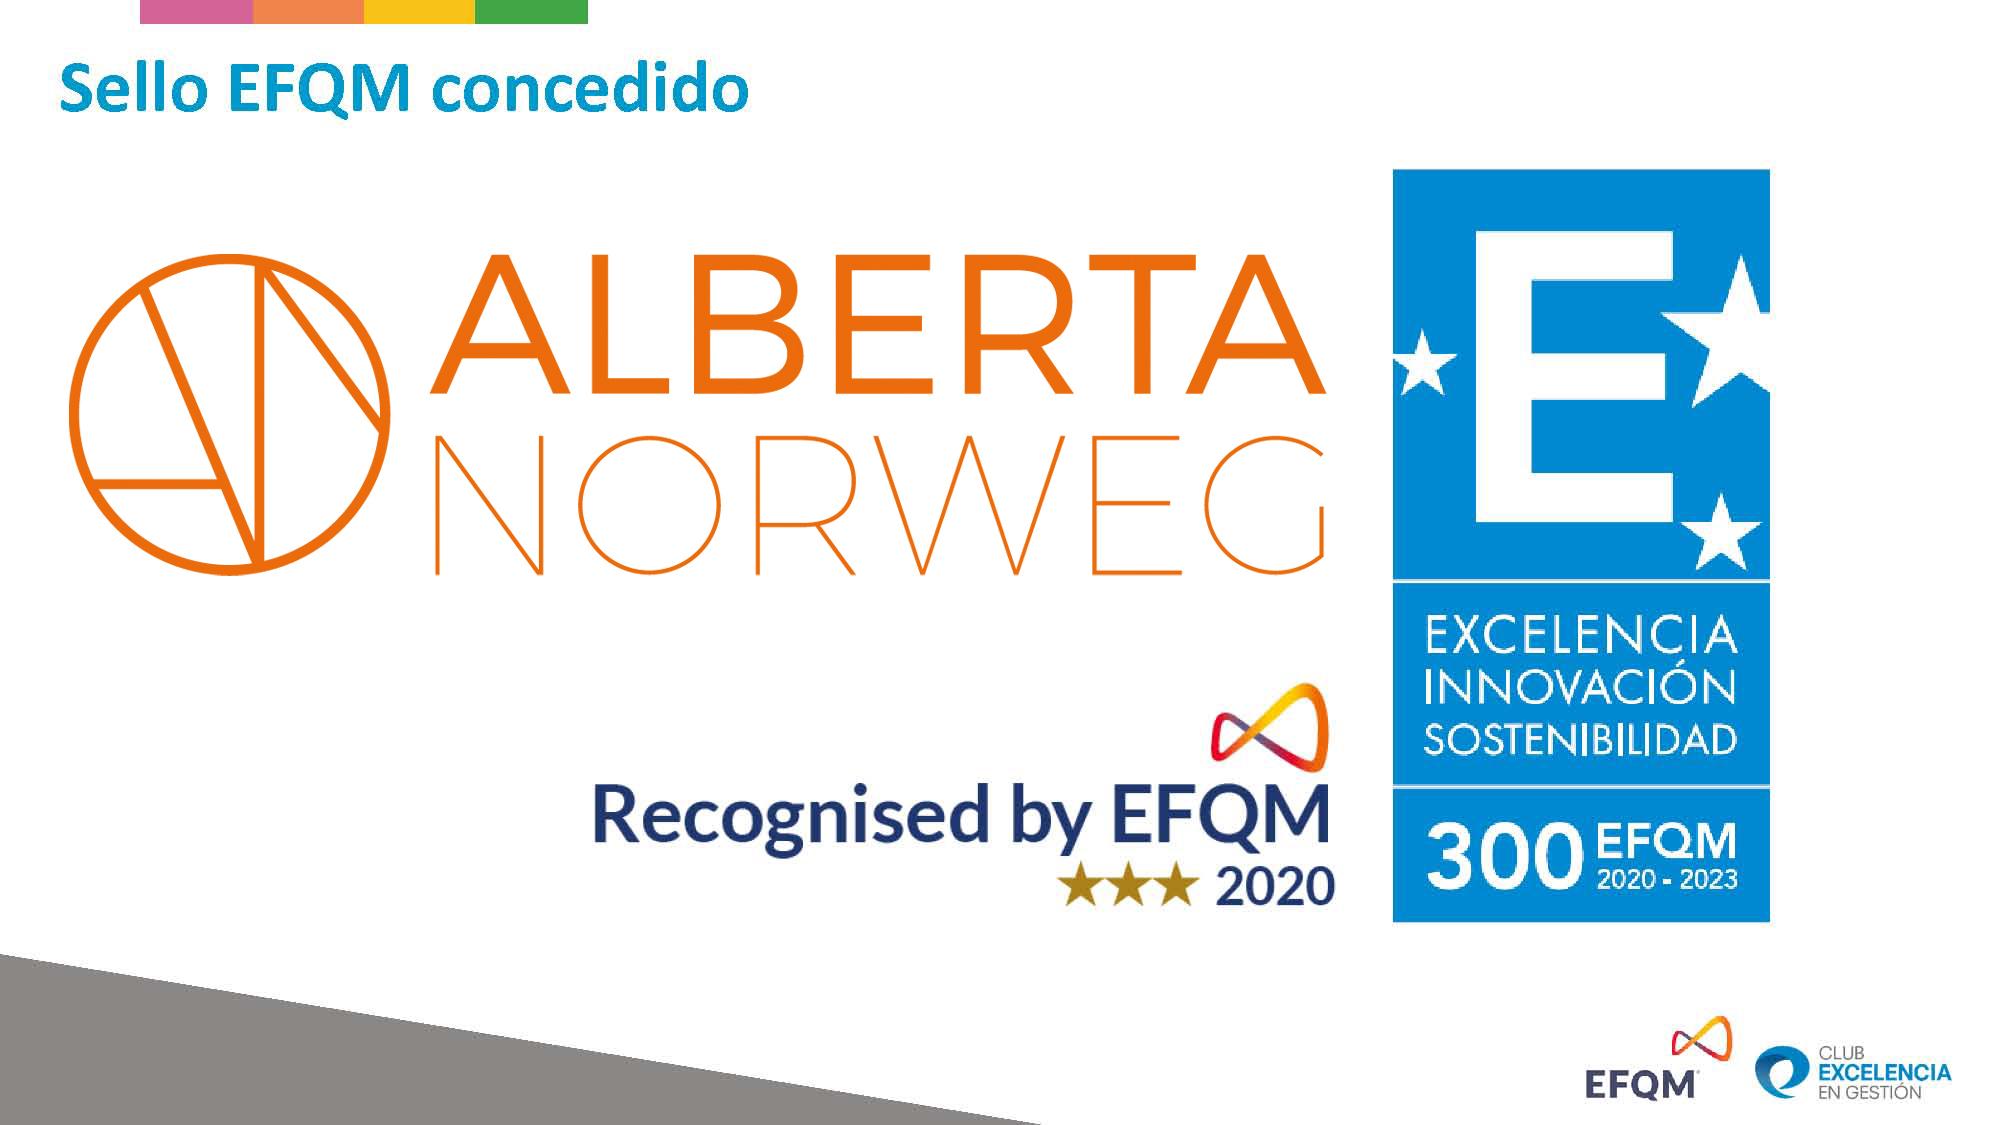 Alberta Norweg, primera organización en obtener el Sello EFQM según el Modelo EFQM 2020